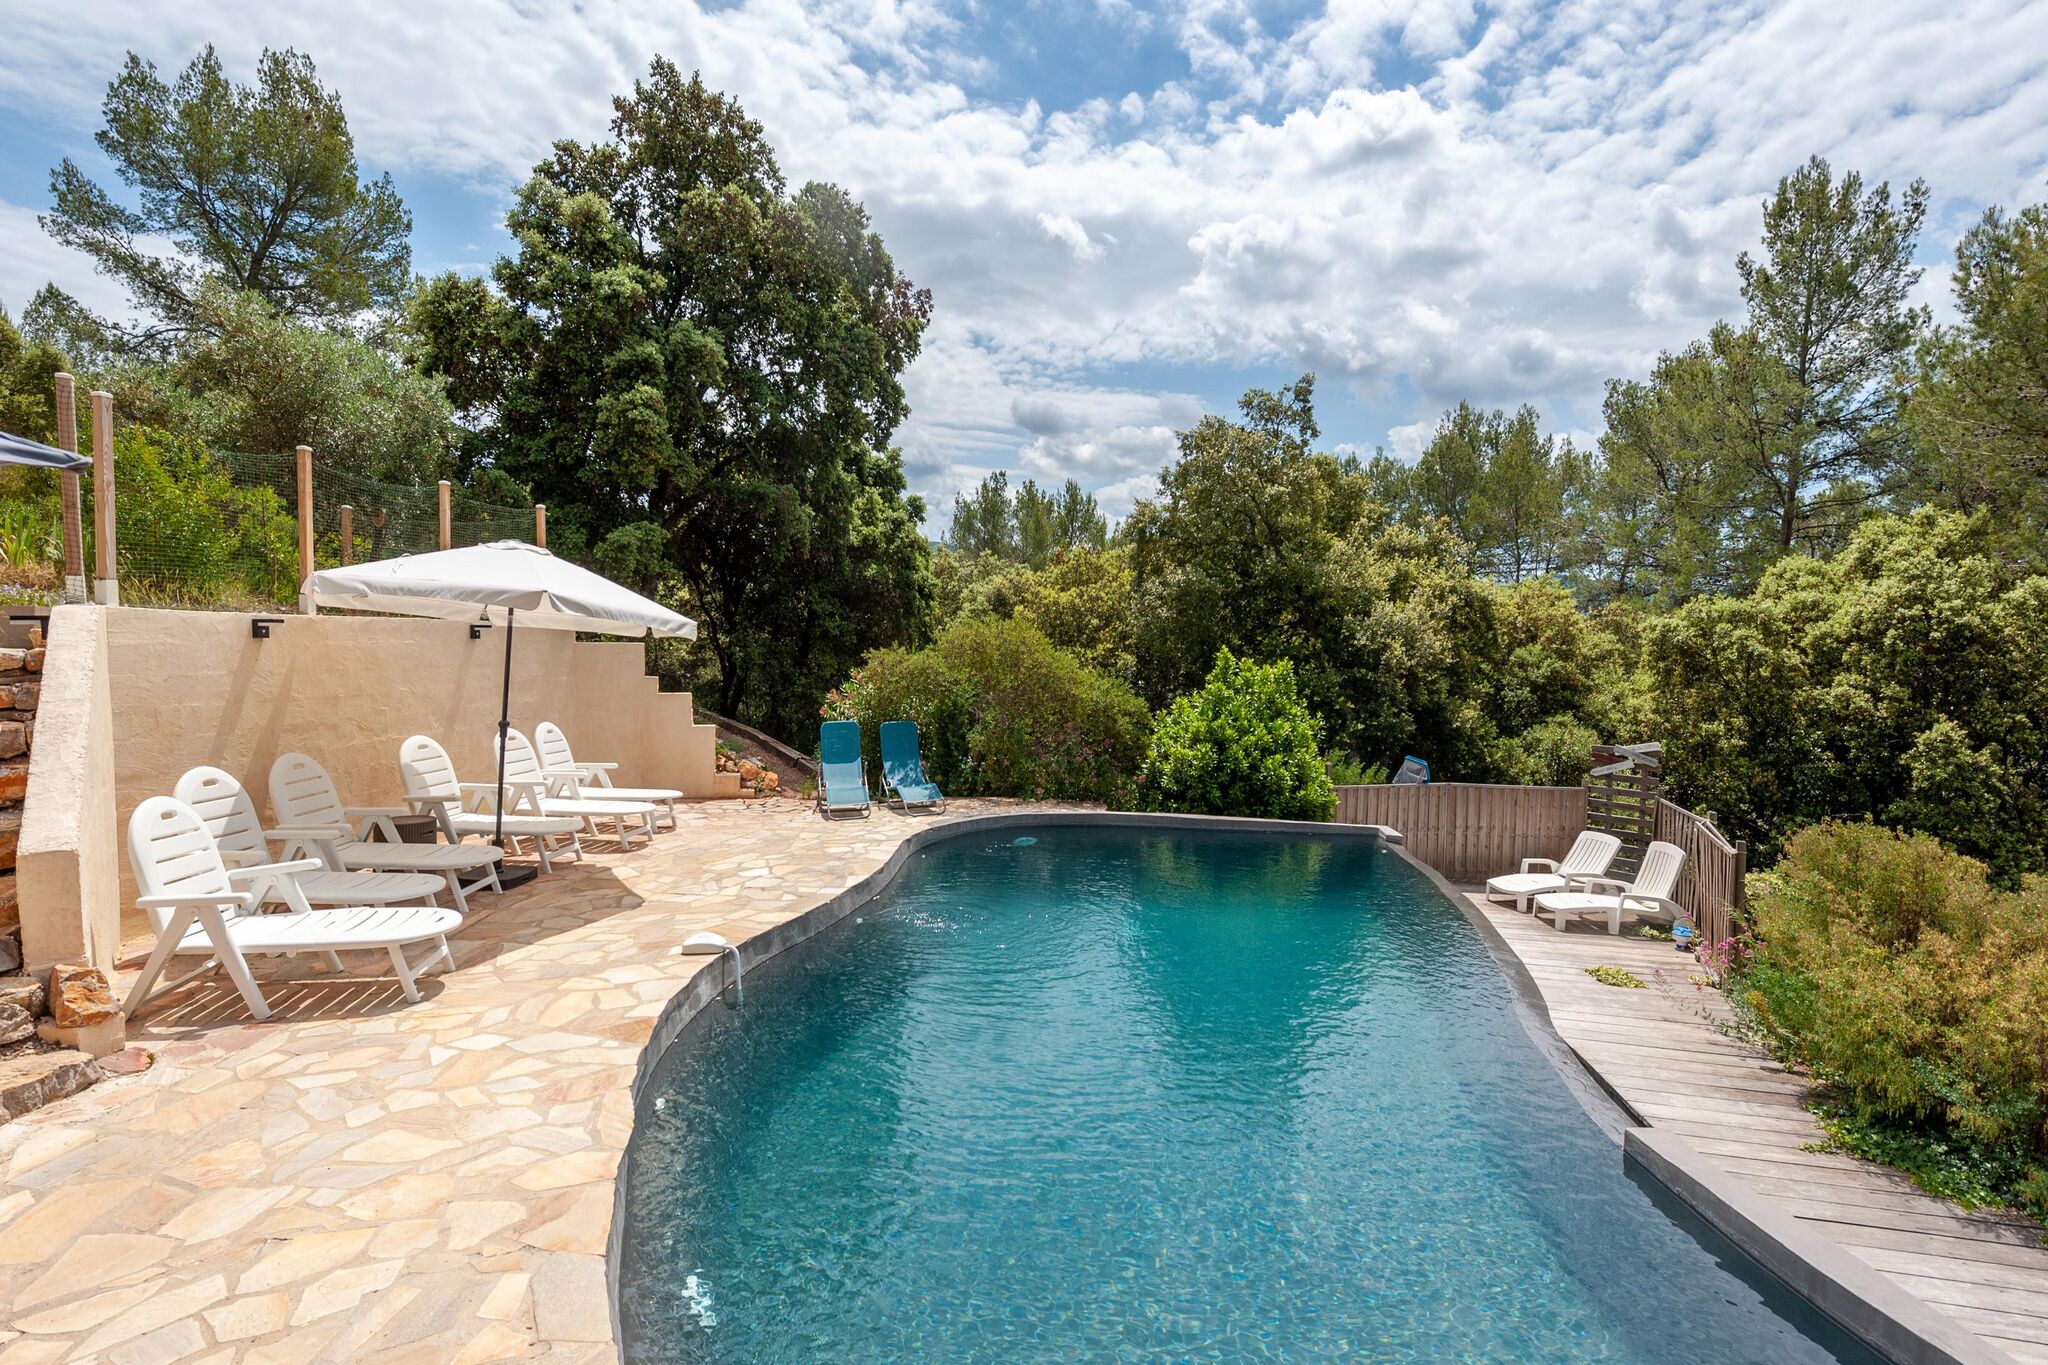 Maison de vacances au calme avec piscine privée à 35 min de Hyere et des plages.